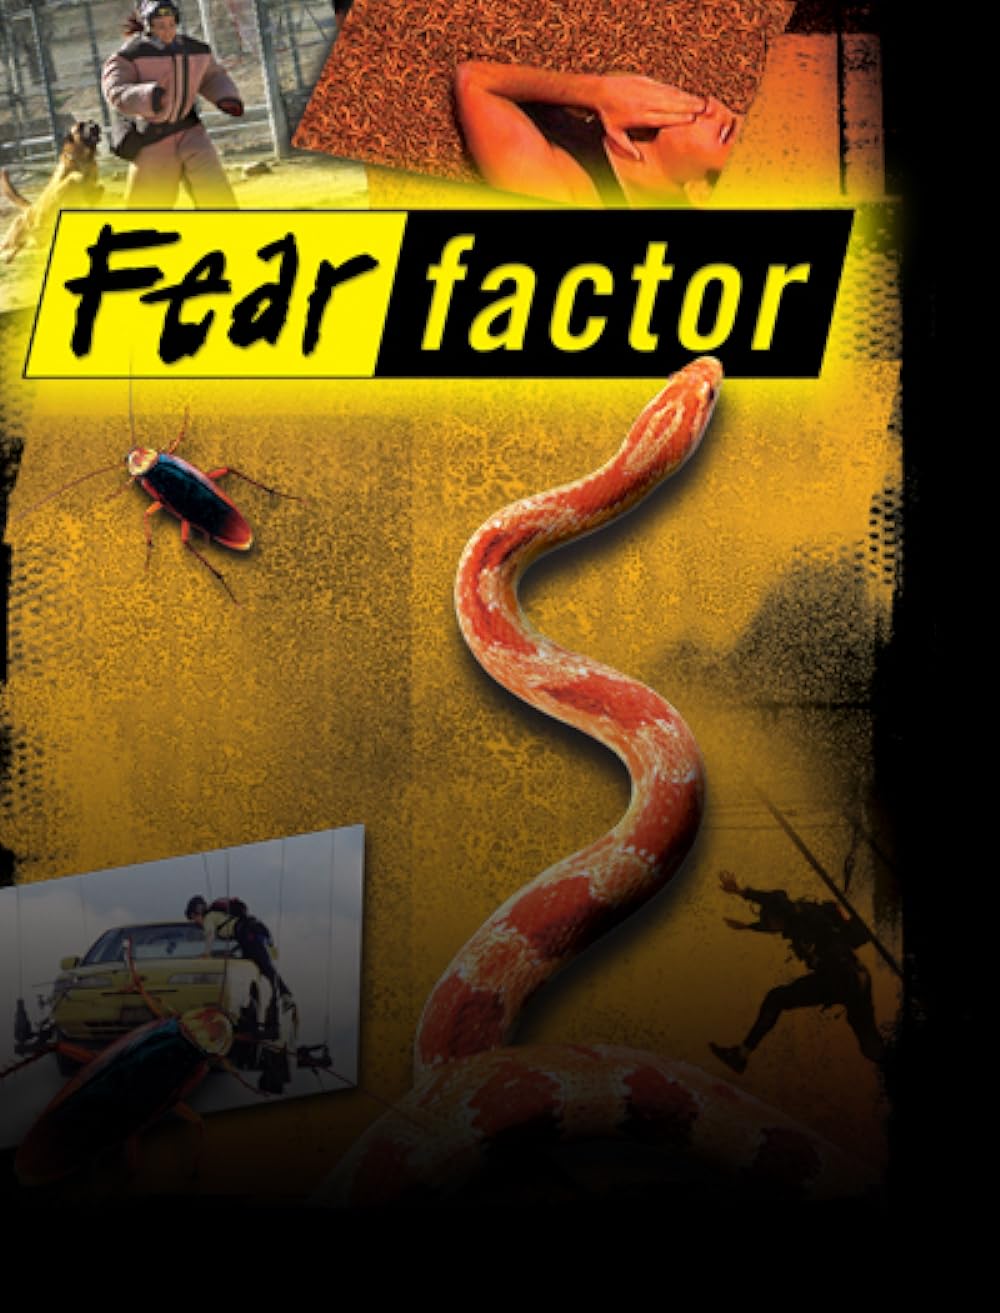 fear factor eating fish eyeballs